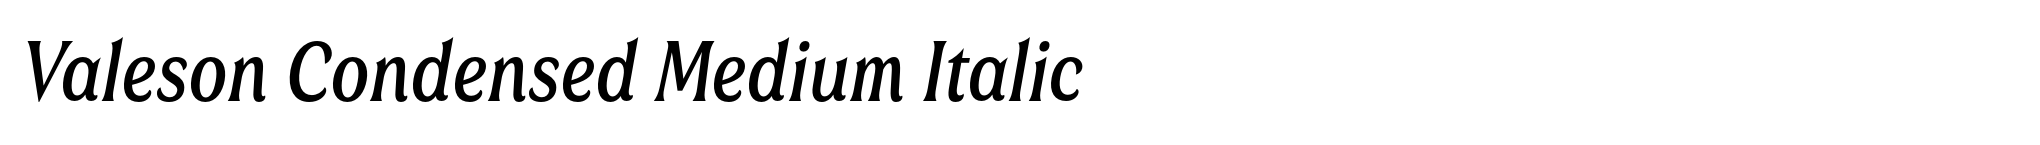 Valeson Condensed Medium Italic image